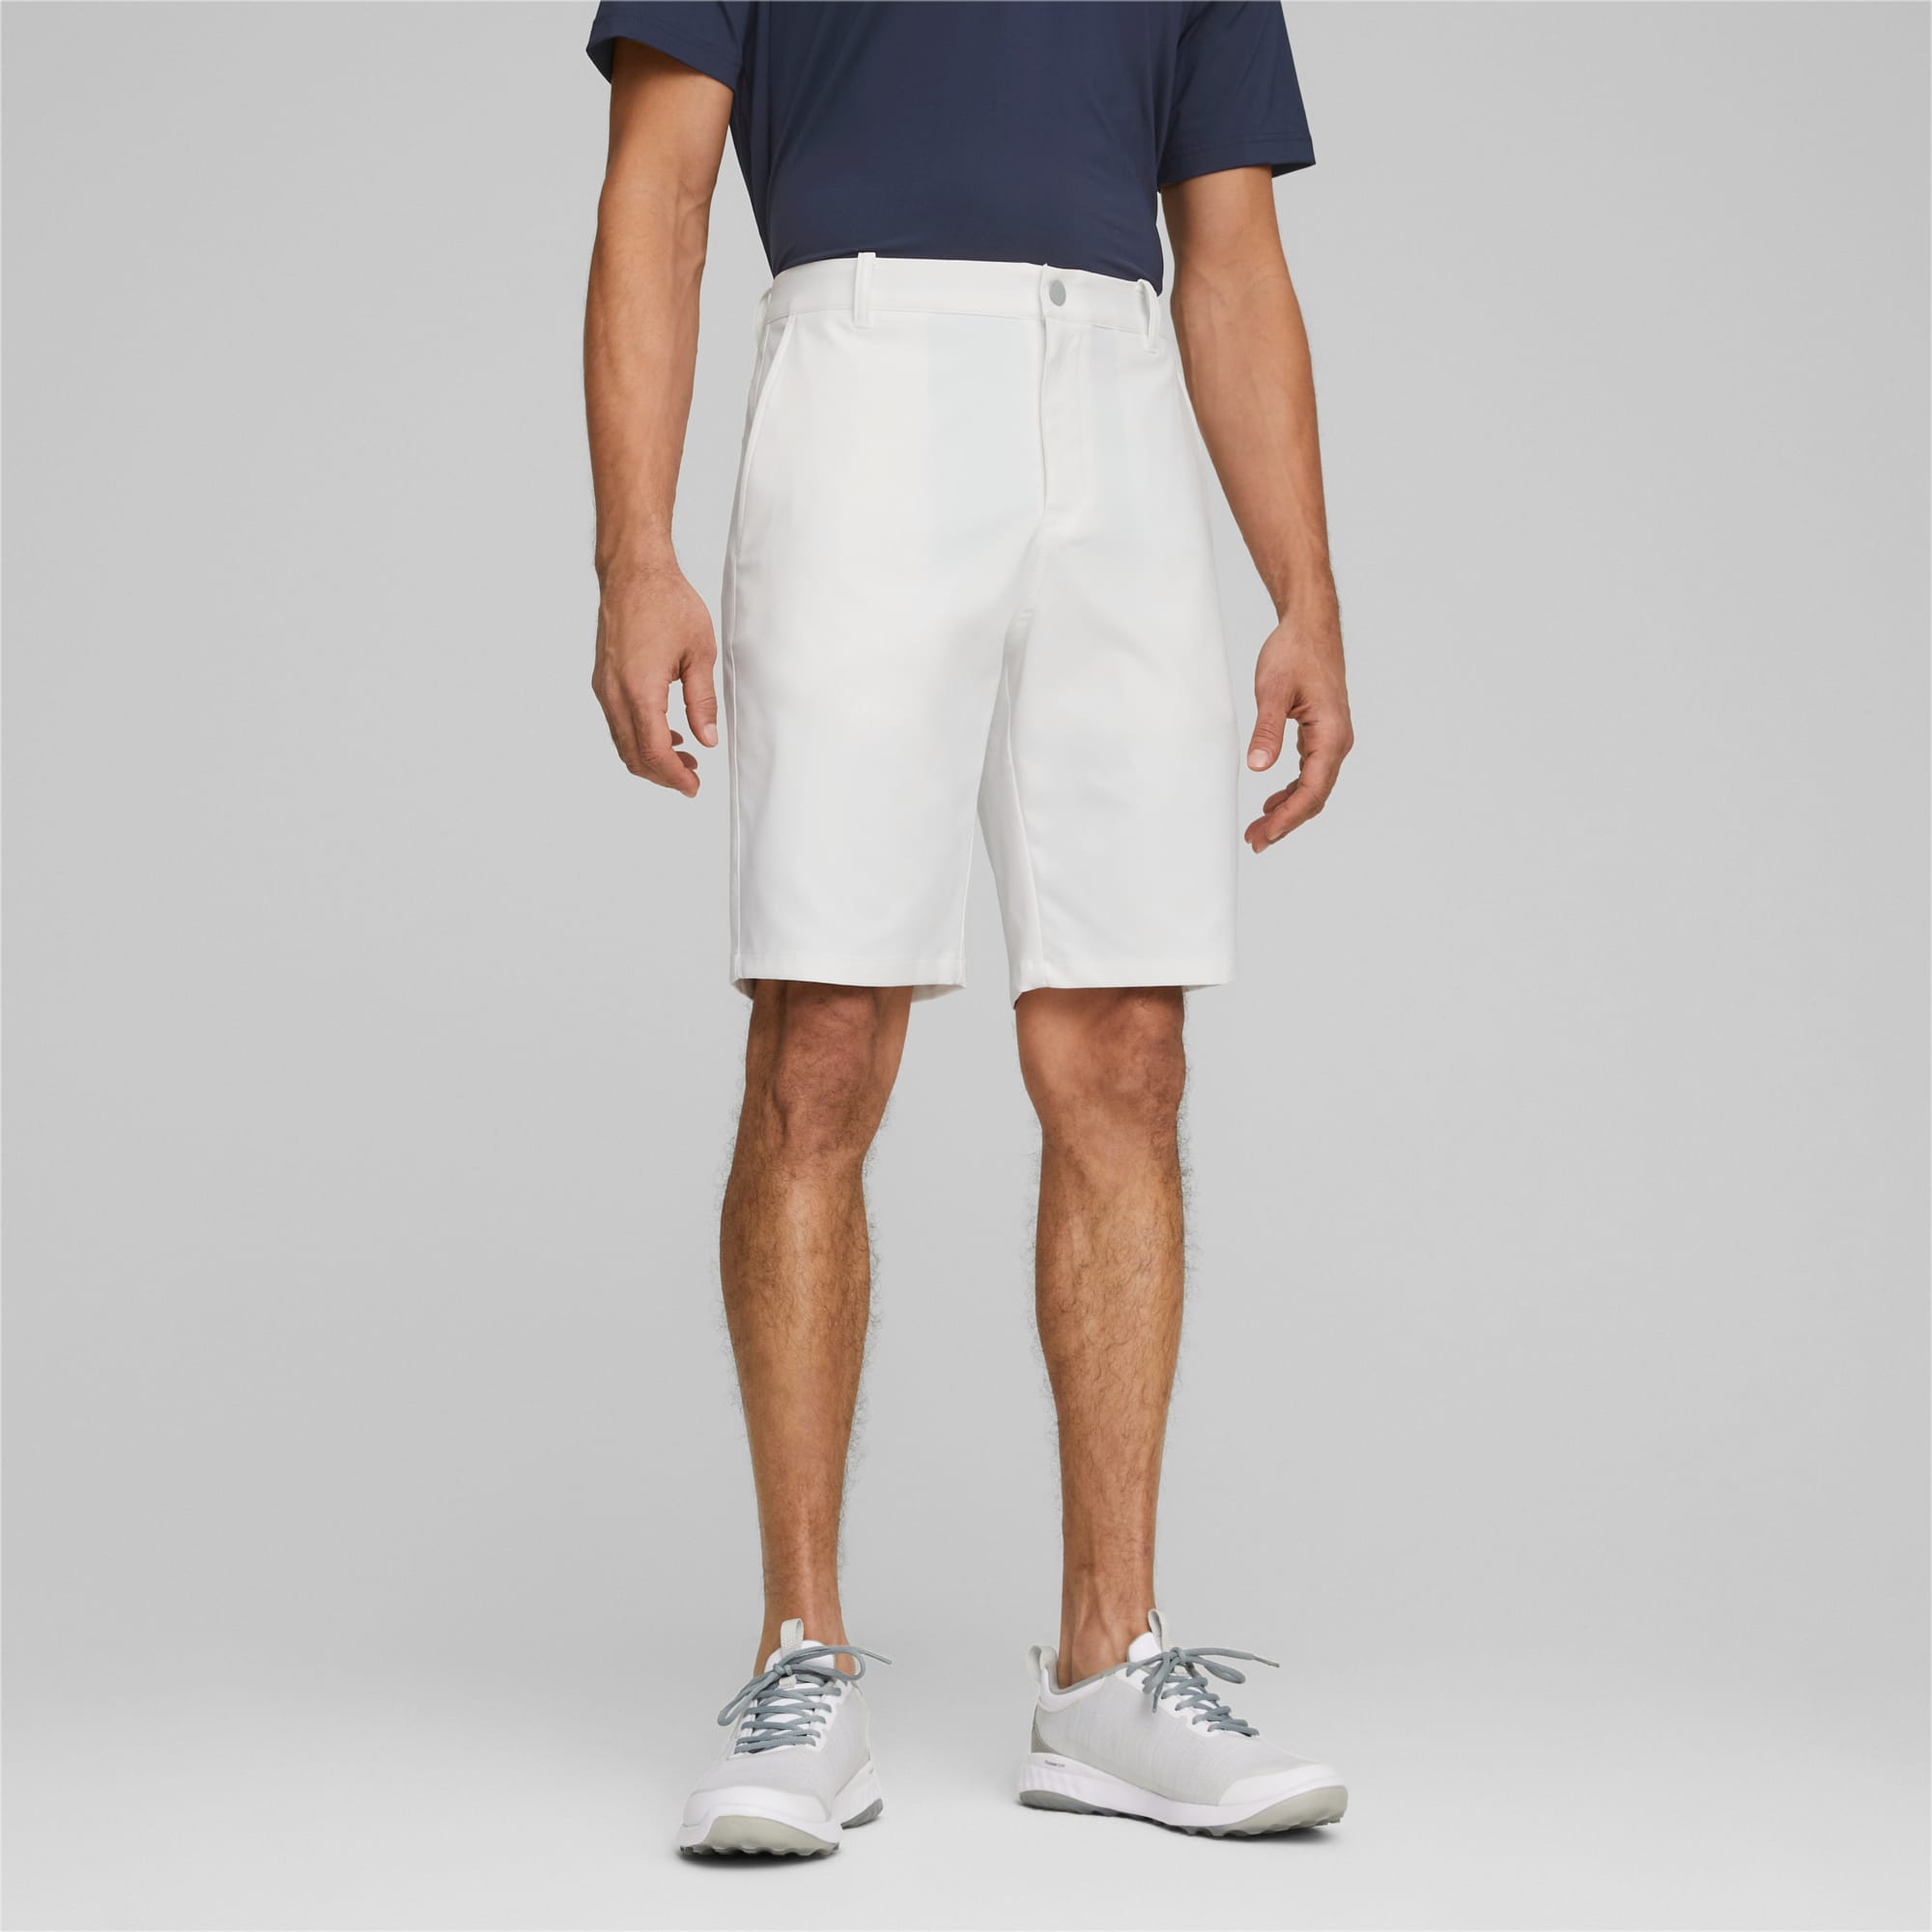 PUMA Shorts De Golf Dealer 10 Para Hombre, Blanco